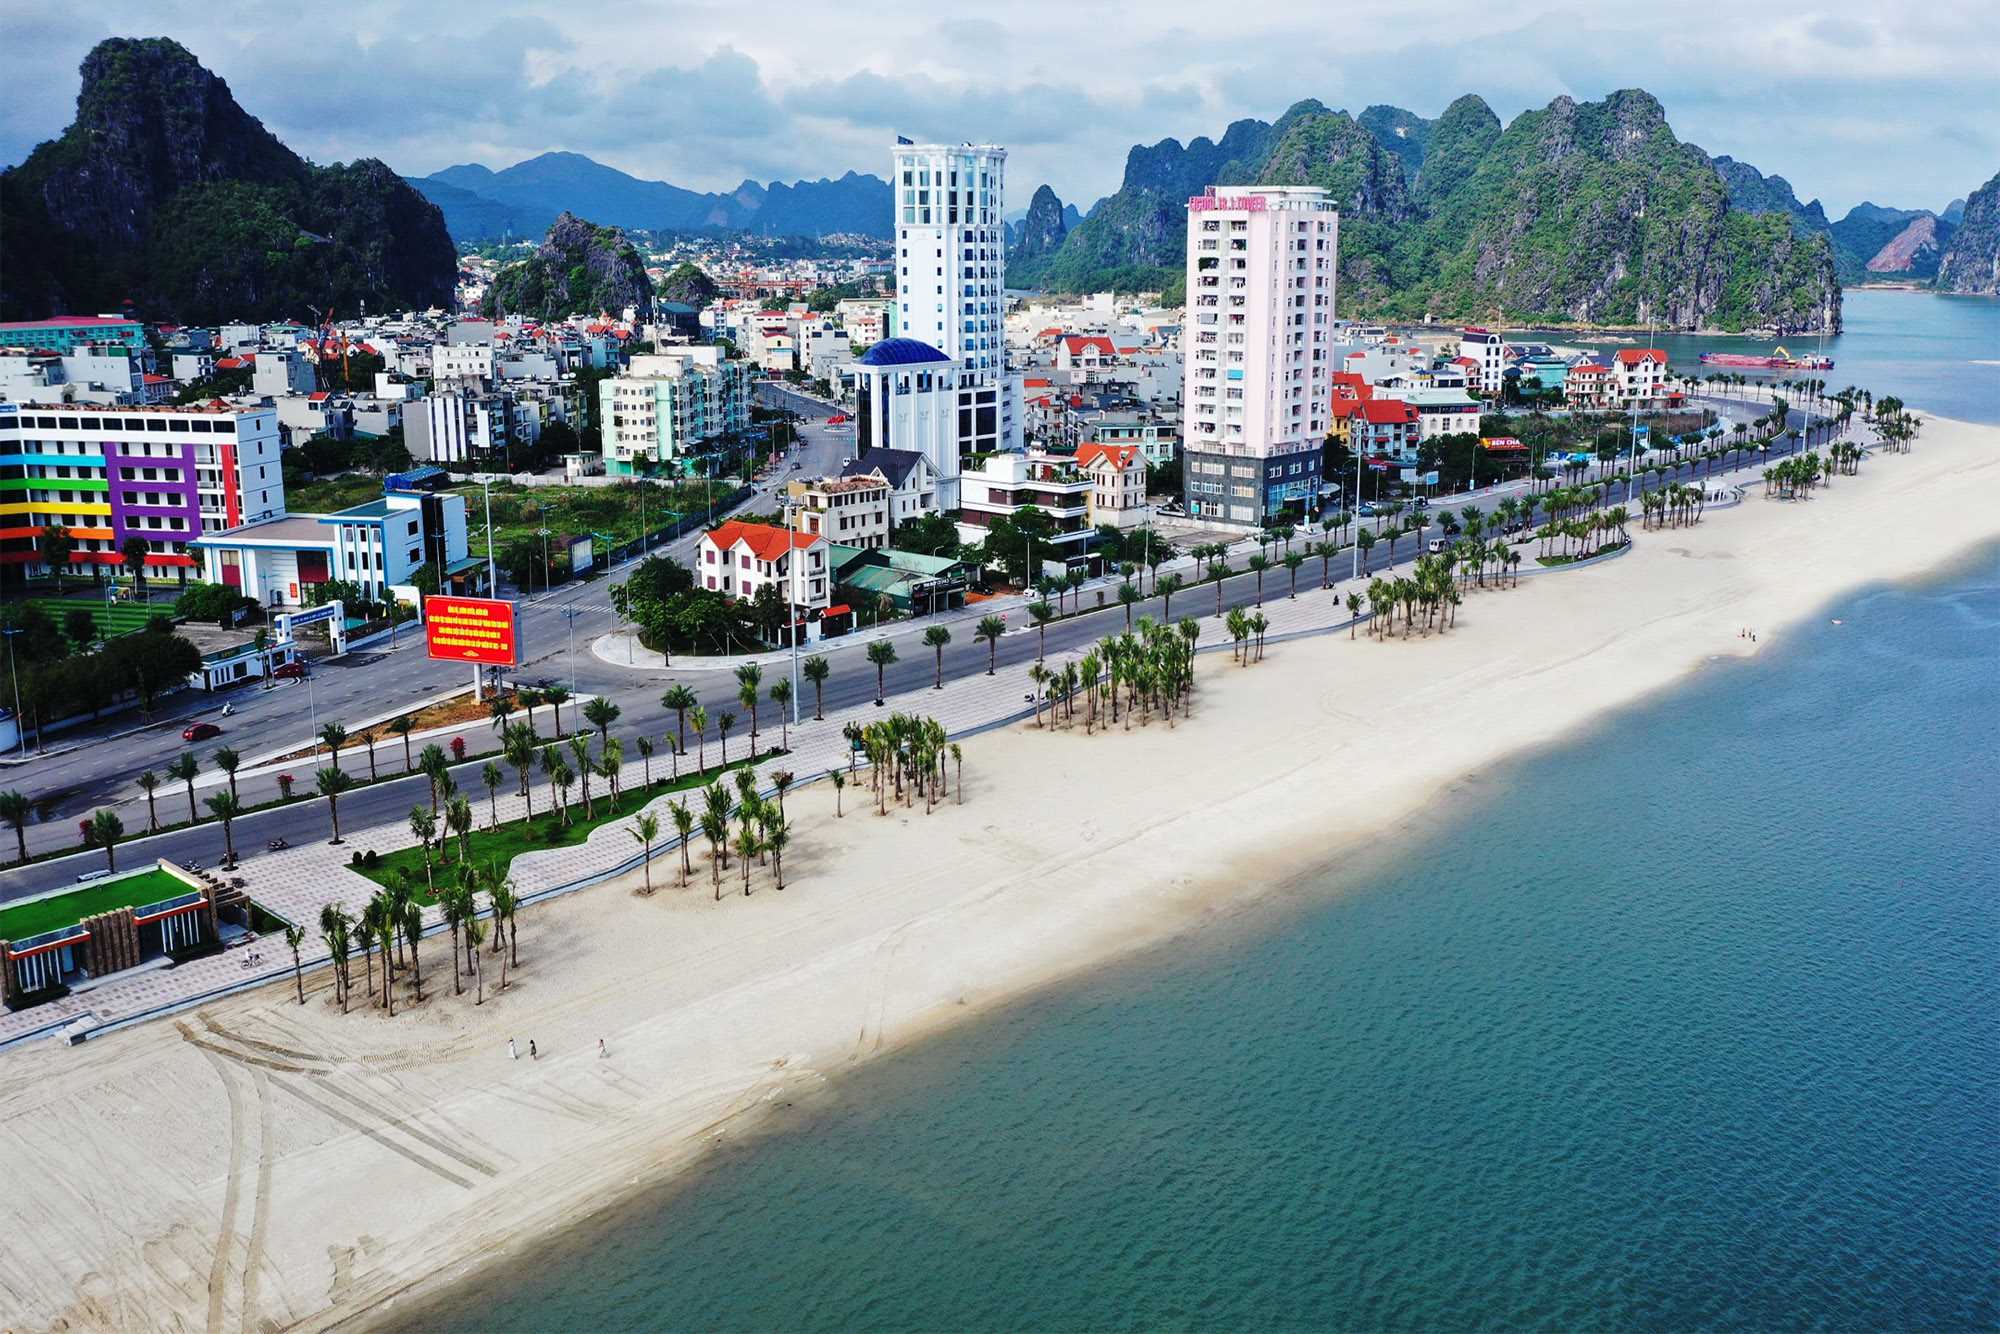 Bãi tắm Hòn Gai – Điểm du lịch hấp dẫn mới nhất tại Hòn Gai, Hạ Long | Vivu5sao.com